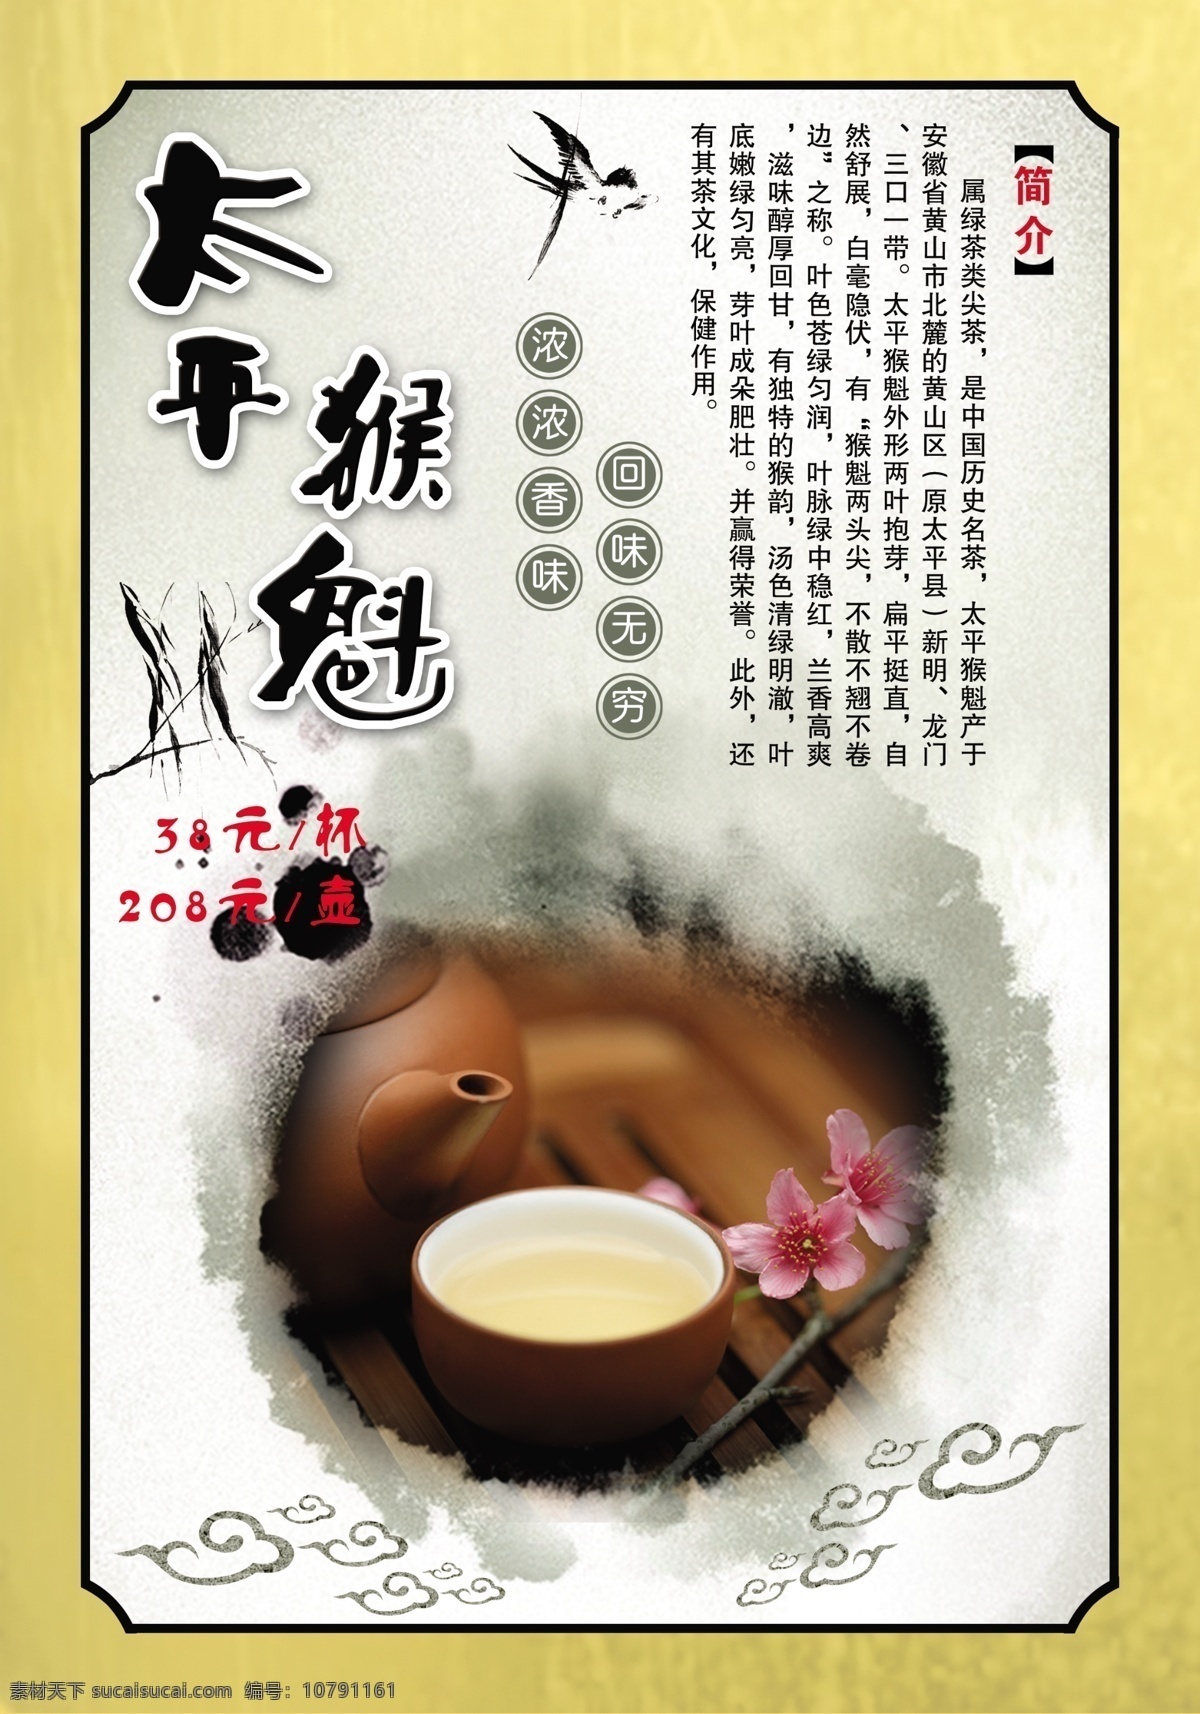 太平猴魁茶 茶叶 茶文化 茶简介 茶背景 文化艺术 传统文化